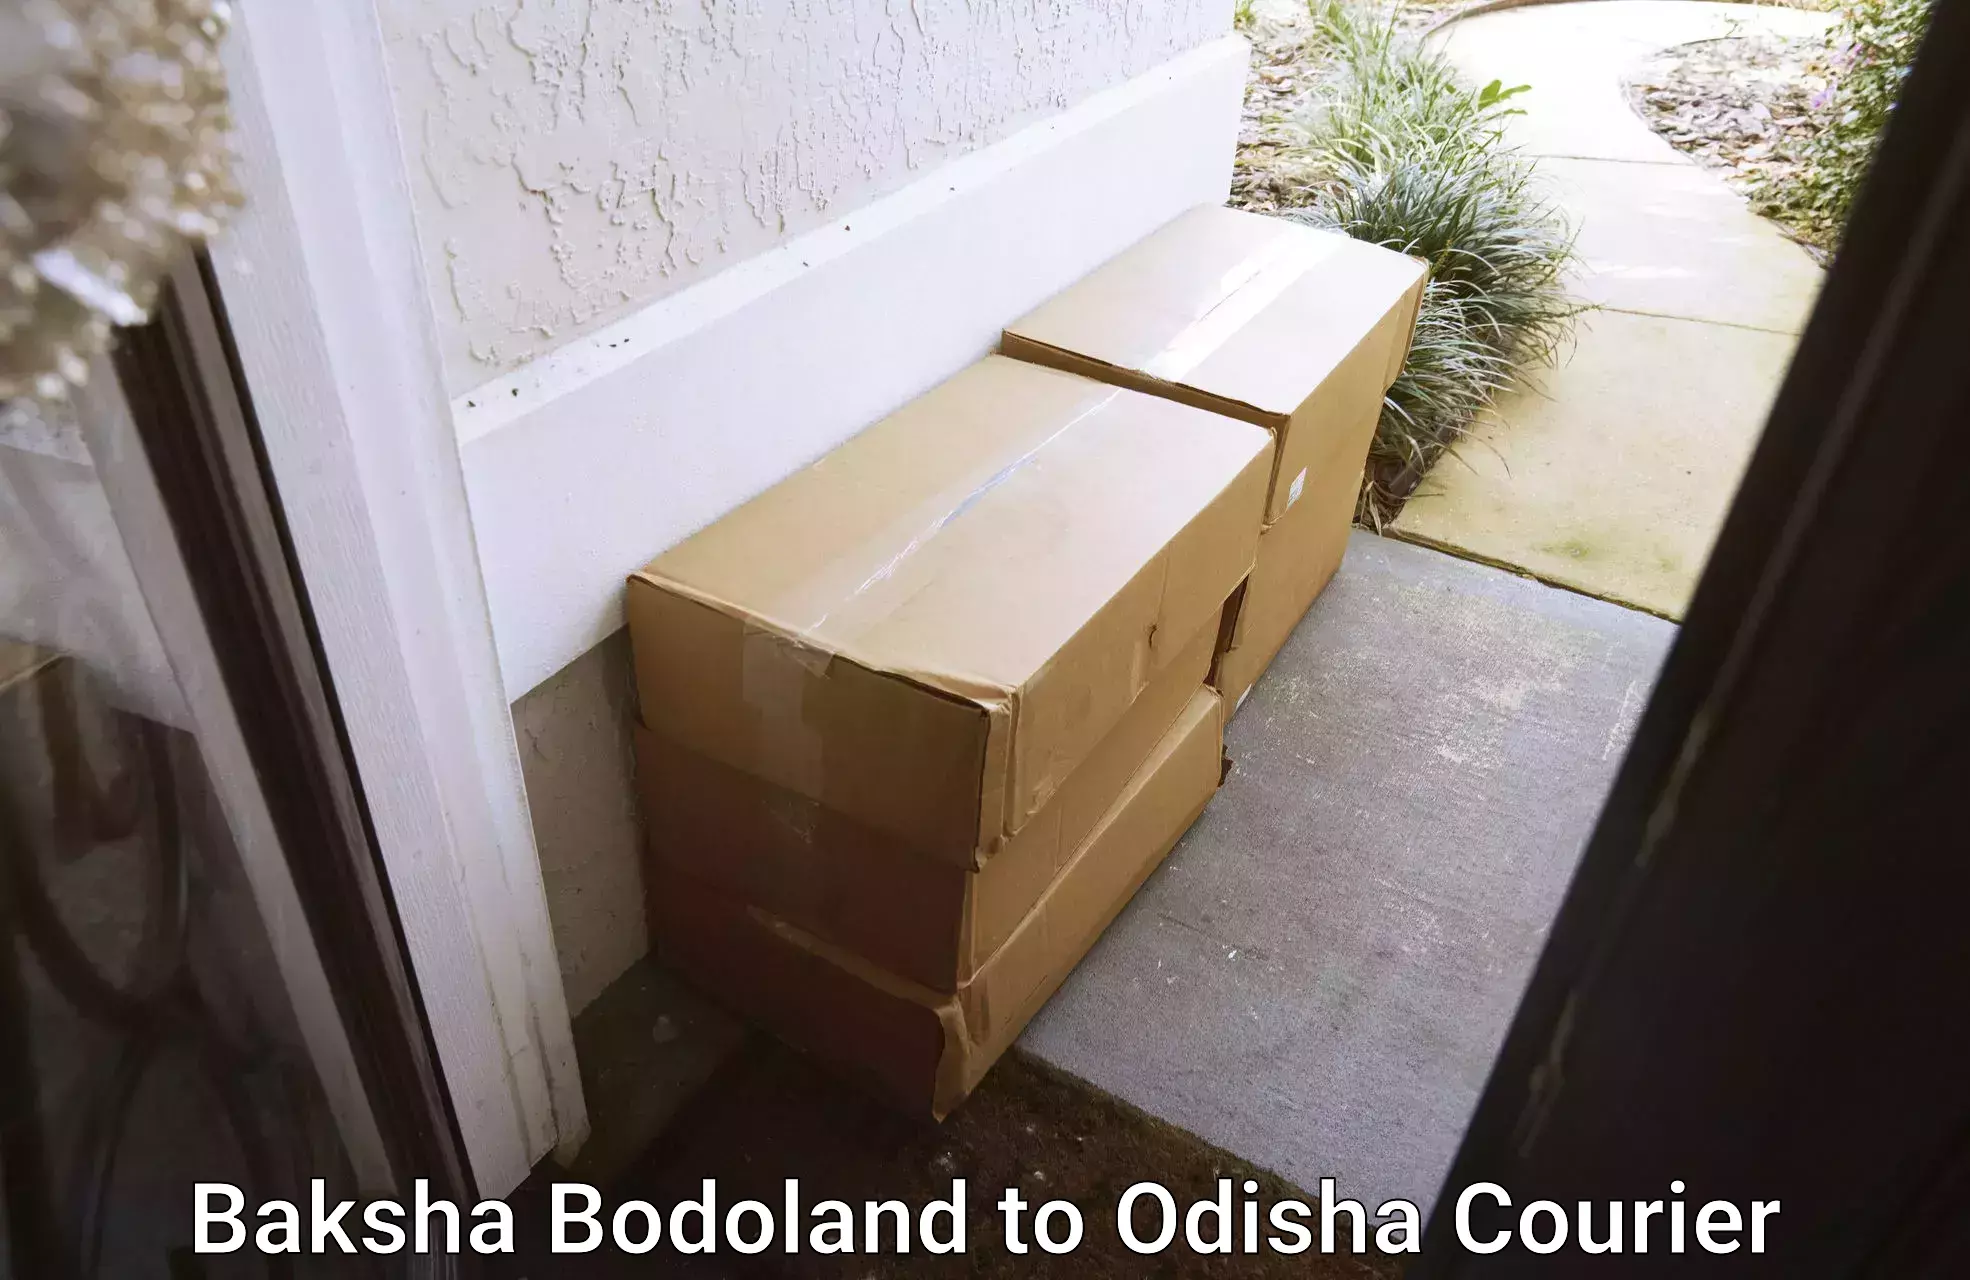 User-friendly delivery service Baksha Bodoland to Kosagumuda